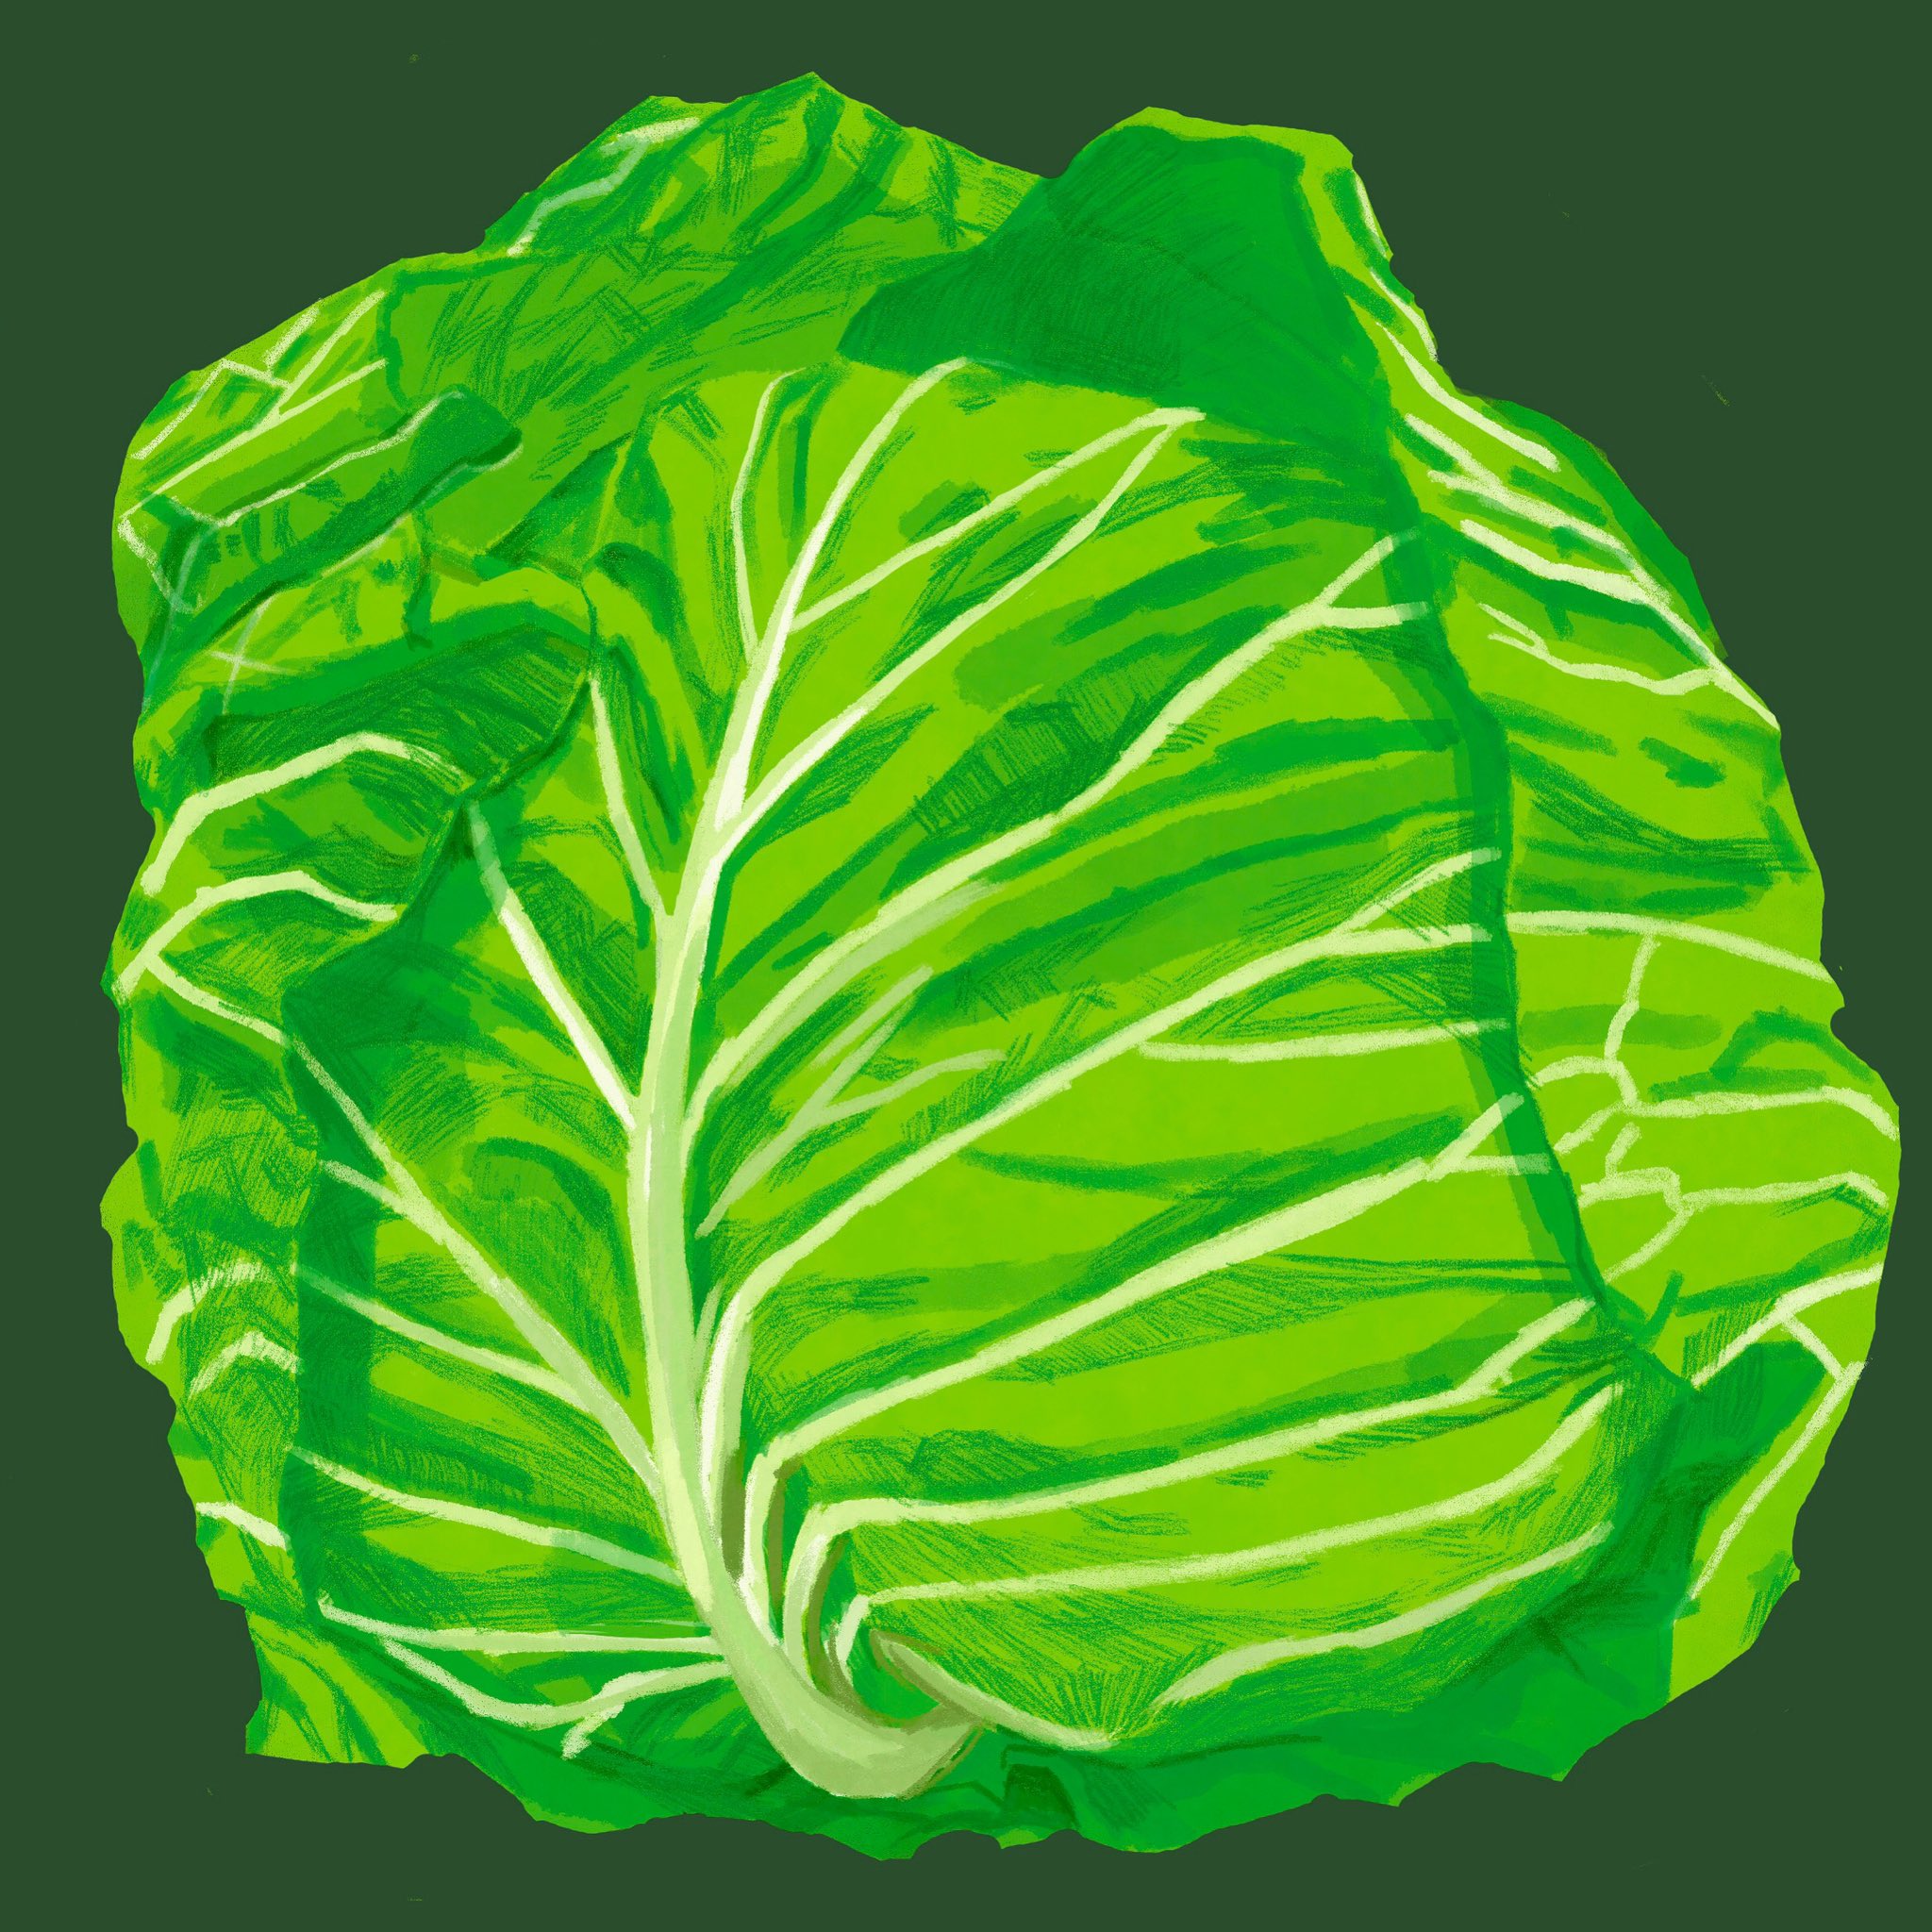 Kyo キャベツ Cabbage キャベツ Cabbage イラスト好きな人と繋がりたい 絵描きさんと繋がりたい 可愛い ゆるいイラスト 畑 野菜 Vegetable T Co 3vub6edi8h Twitter